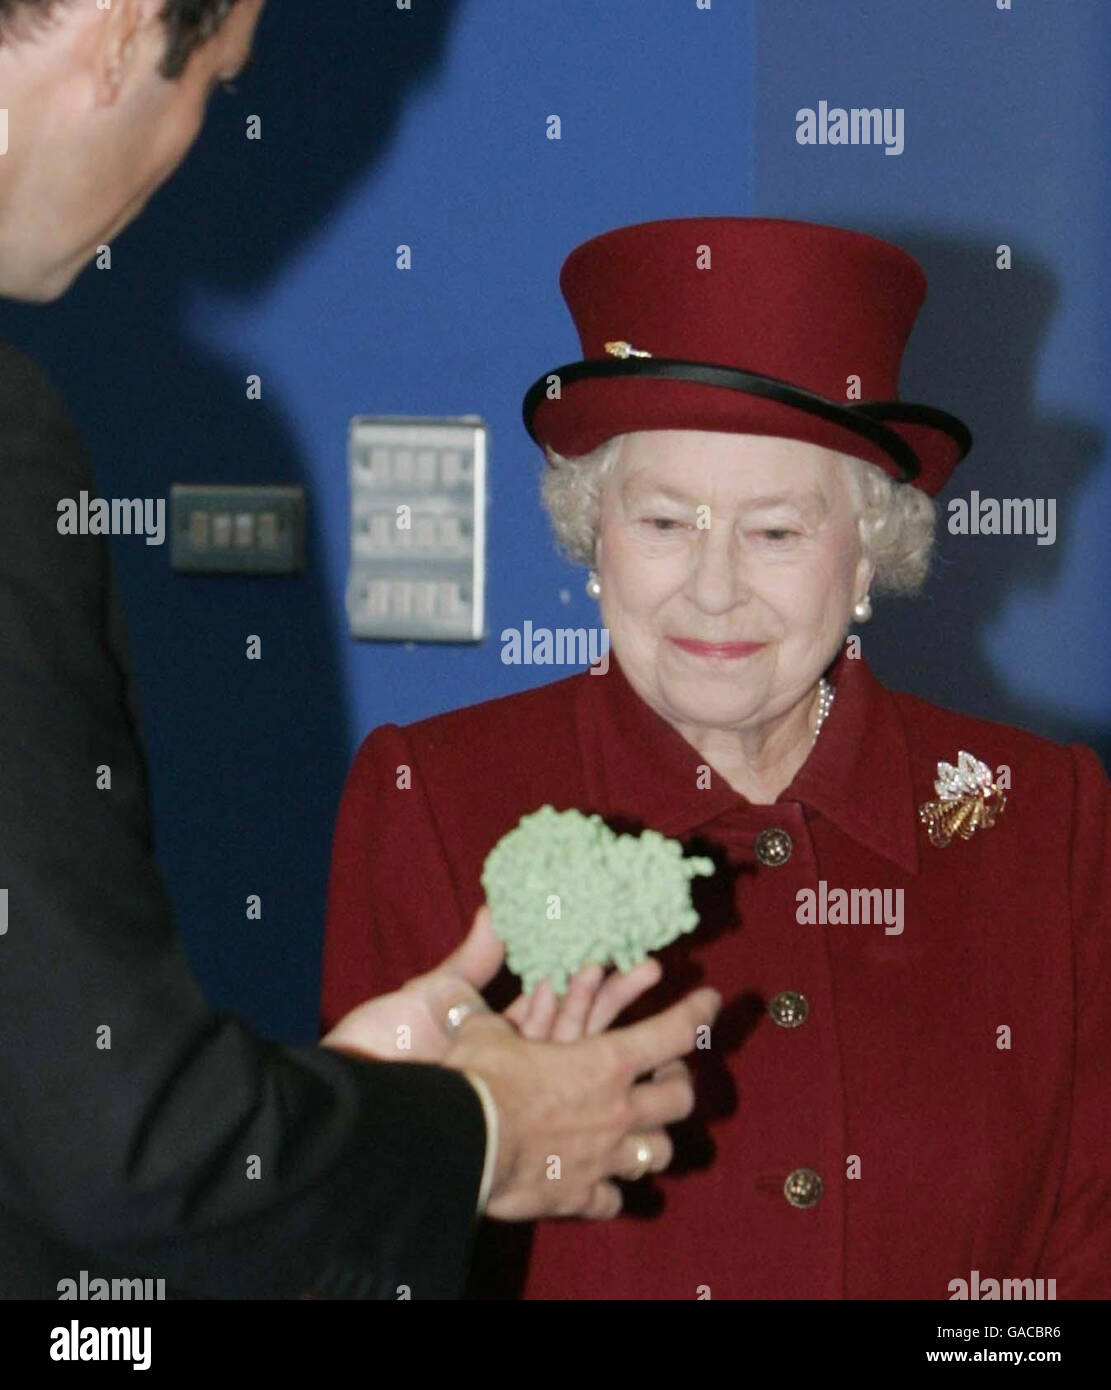 La reine Elizabeth II lors de sa visite de la nouvelle source lumineuse Diamond à Didcot dans l'Oxfordshire. La Reine est photographiée avec un modèle de 'virus de la grippe' (blob vert) pendant la visite de l'installation qui abrite le nouveau synchrotron à source lumineuse de diamant. Banque D'Images